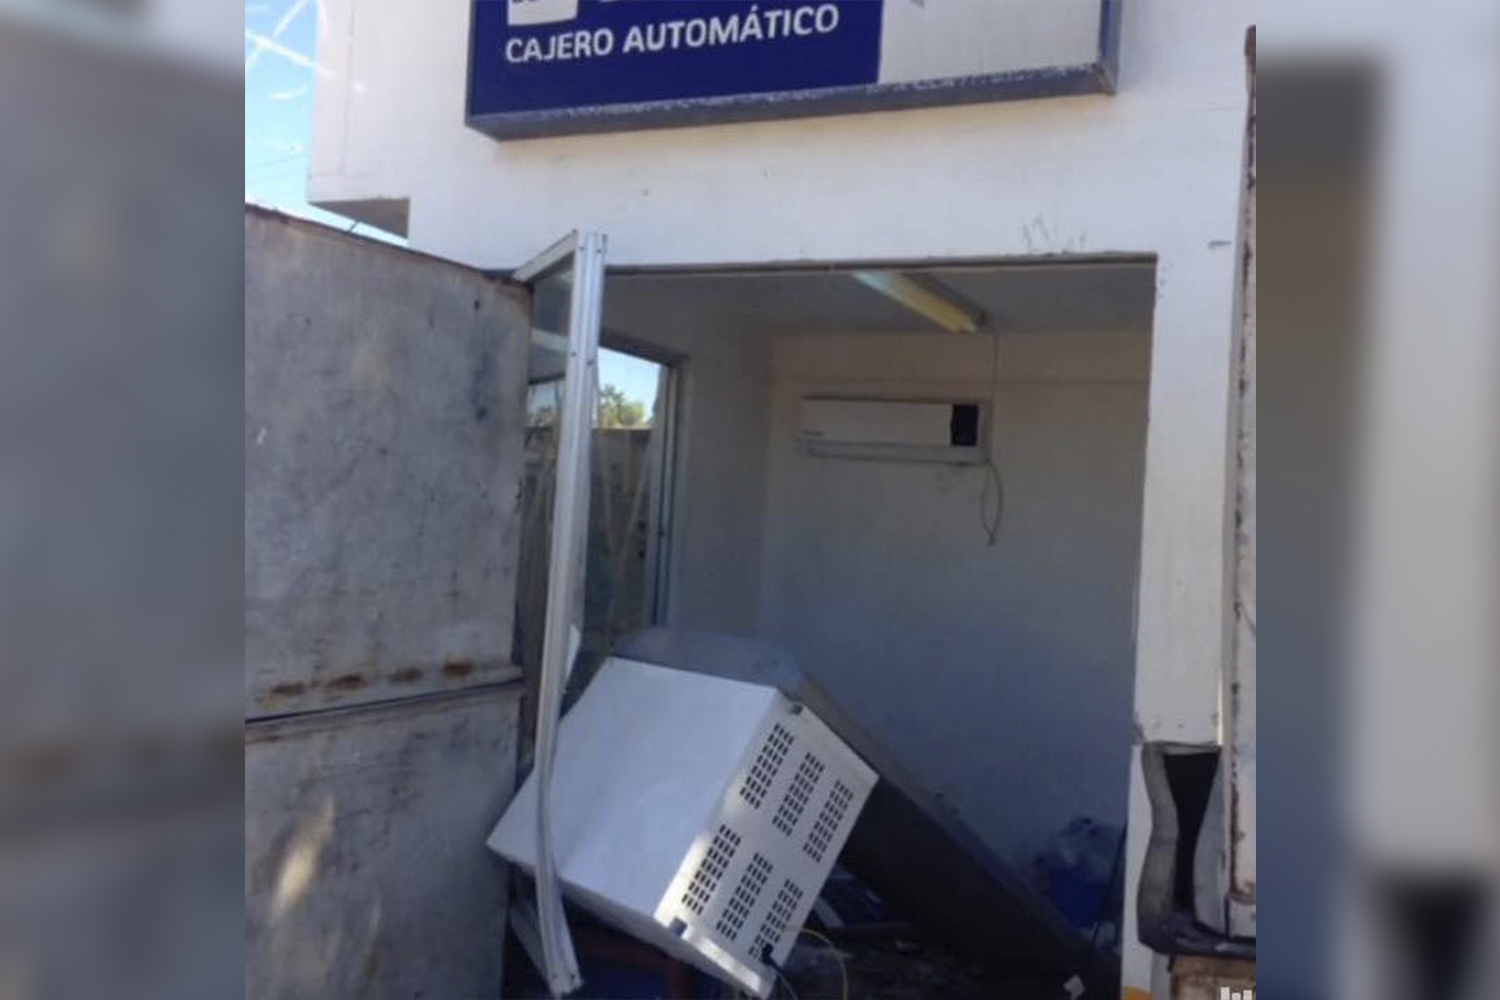 En puerto San Carlos se llevaron cajero automático de Bancomer ... - BCS Noticias